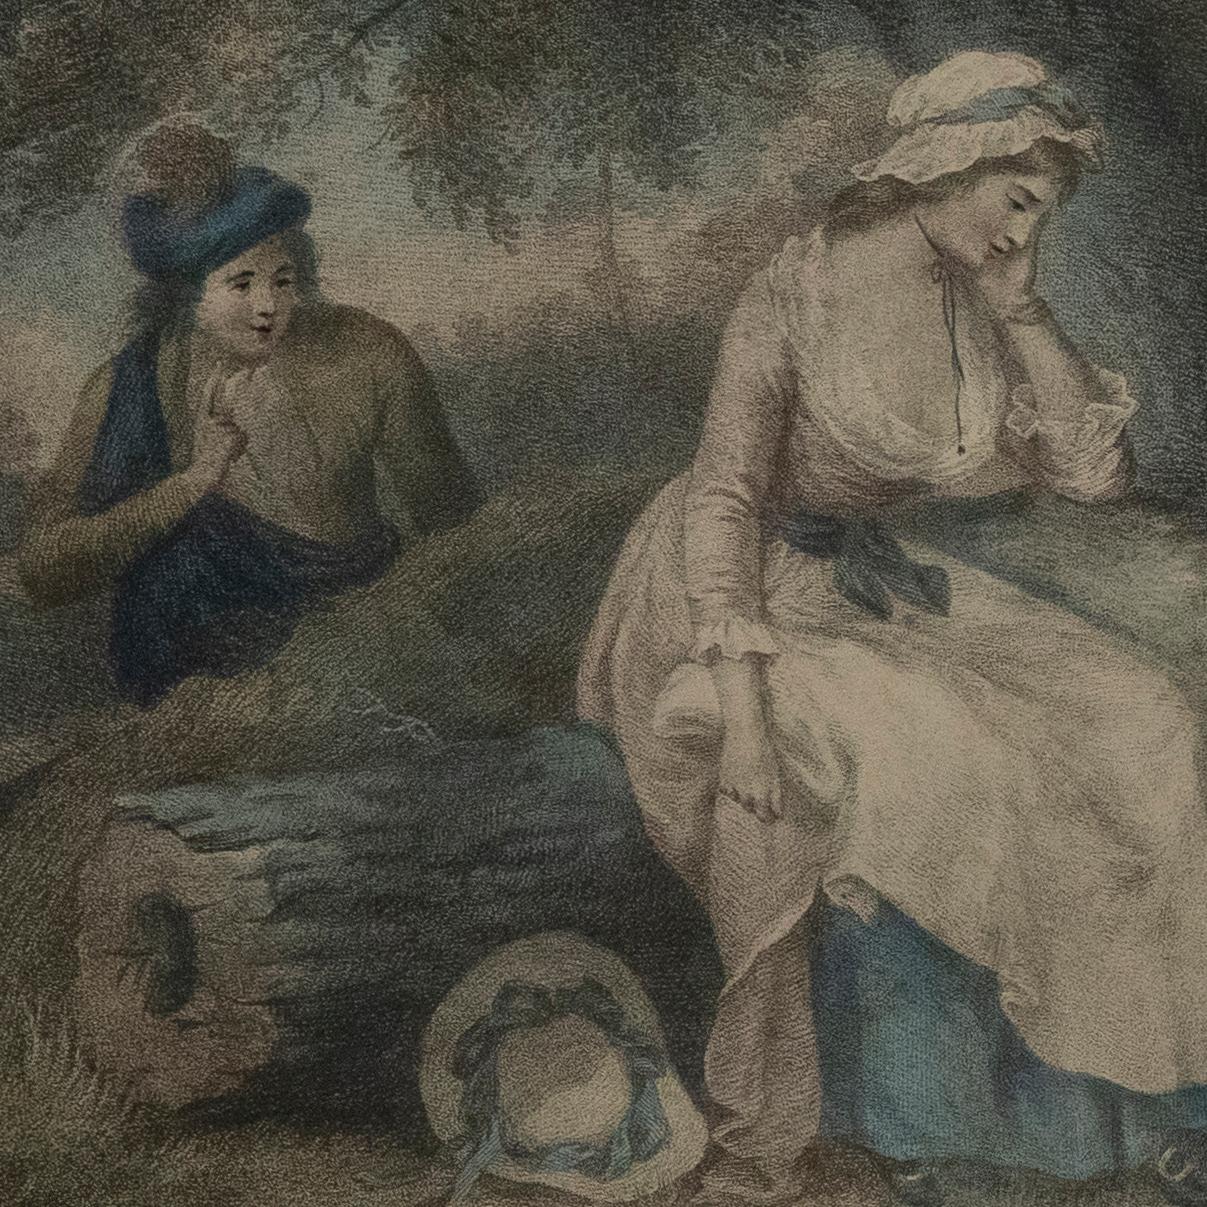 Zwei charmante Kupferstiche nach Gemälden von George Morland (1763-1803). Die erste stellt eine Szene aus dem Lied The Lass of Livingstone dar, die von dem beliebten schottischen Lied inspiriert ist. Die andere trägt die Inschrift 